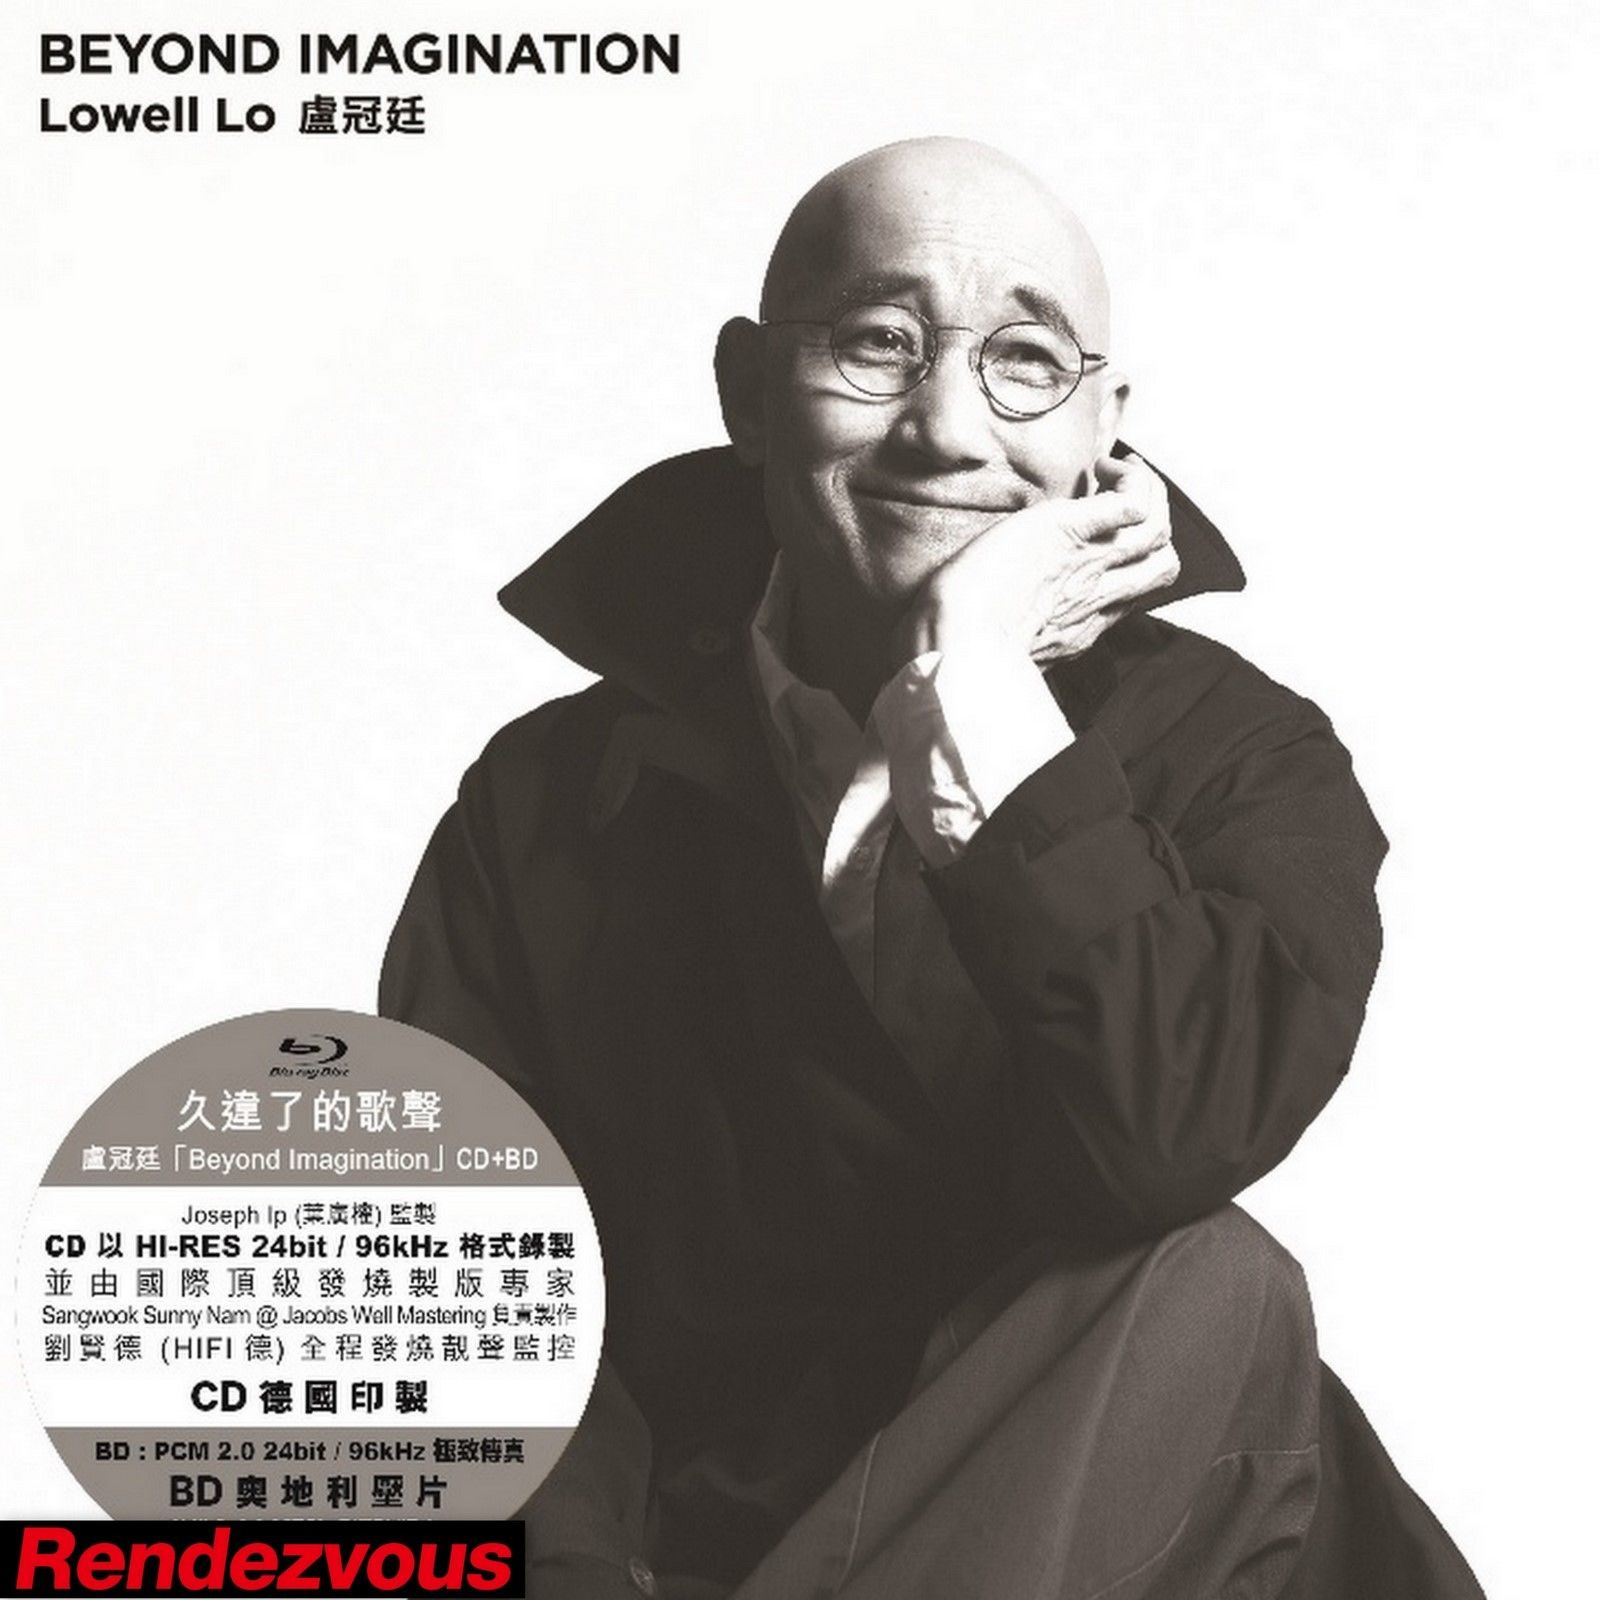 盧冠廷 Lowell Lo - Beyond Imagination Music Live (2015) Blu-ray AVC LPCM 2.0